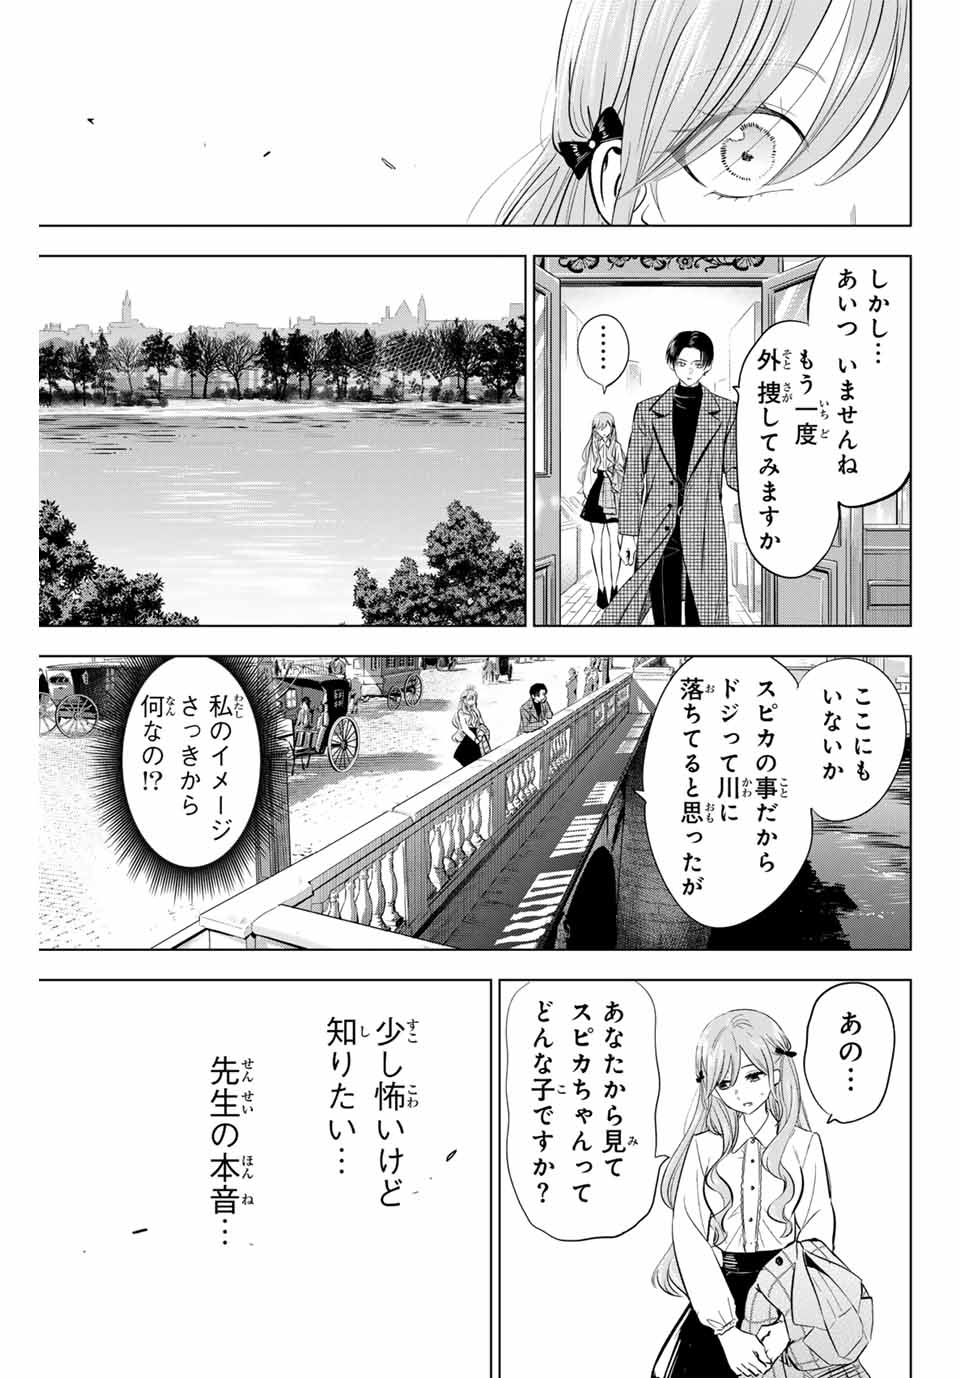 Kuroneko to Majo no Kyoushitsu - Chapter 60 - Page 11